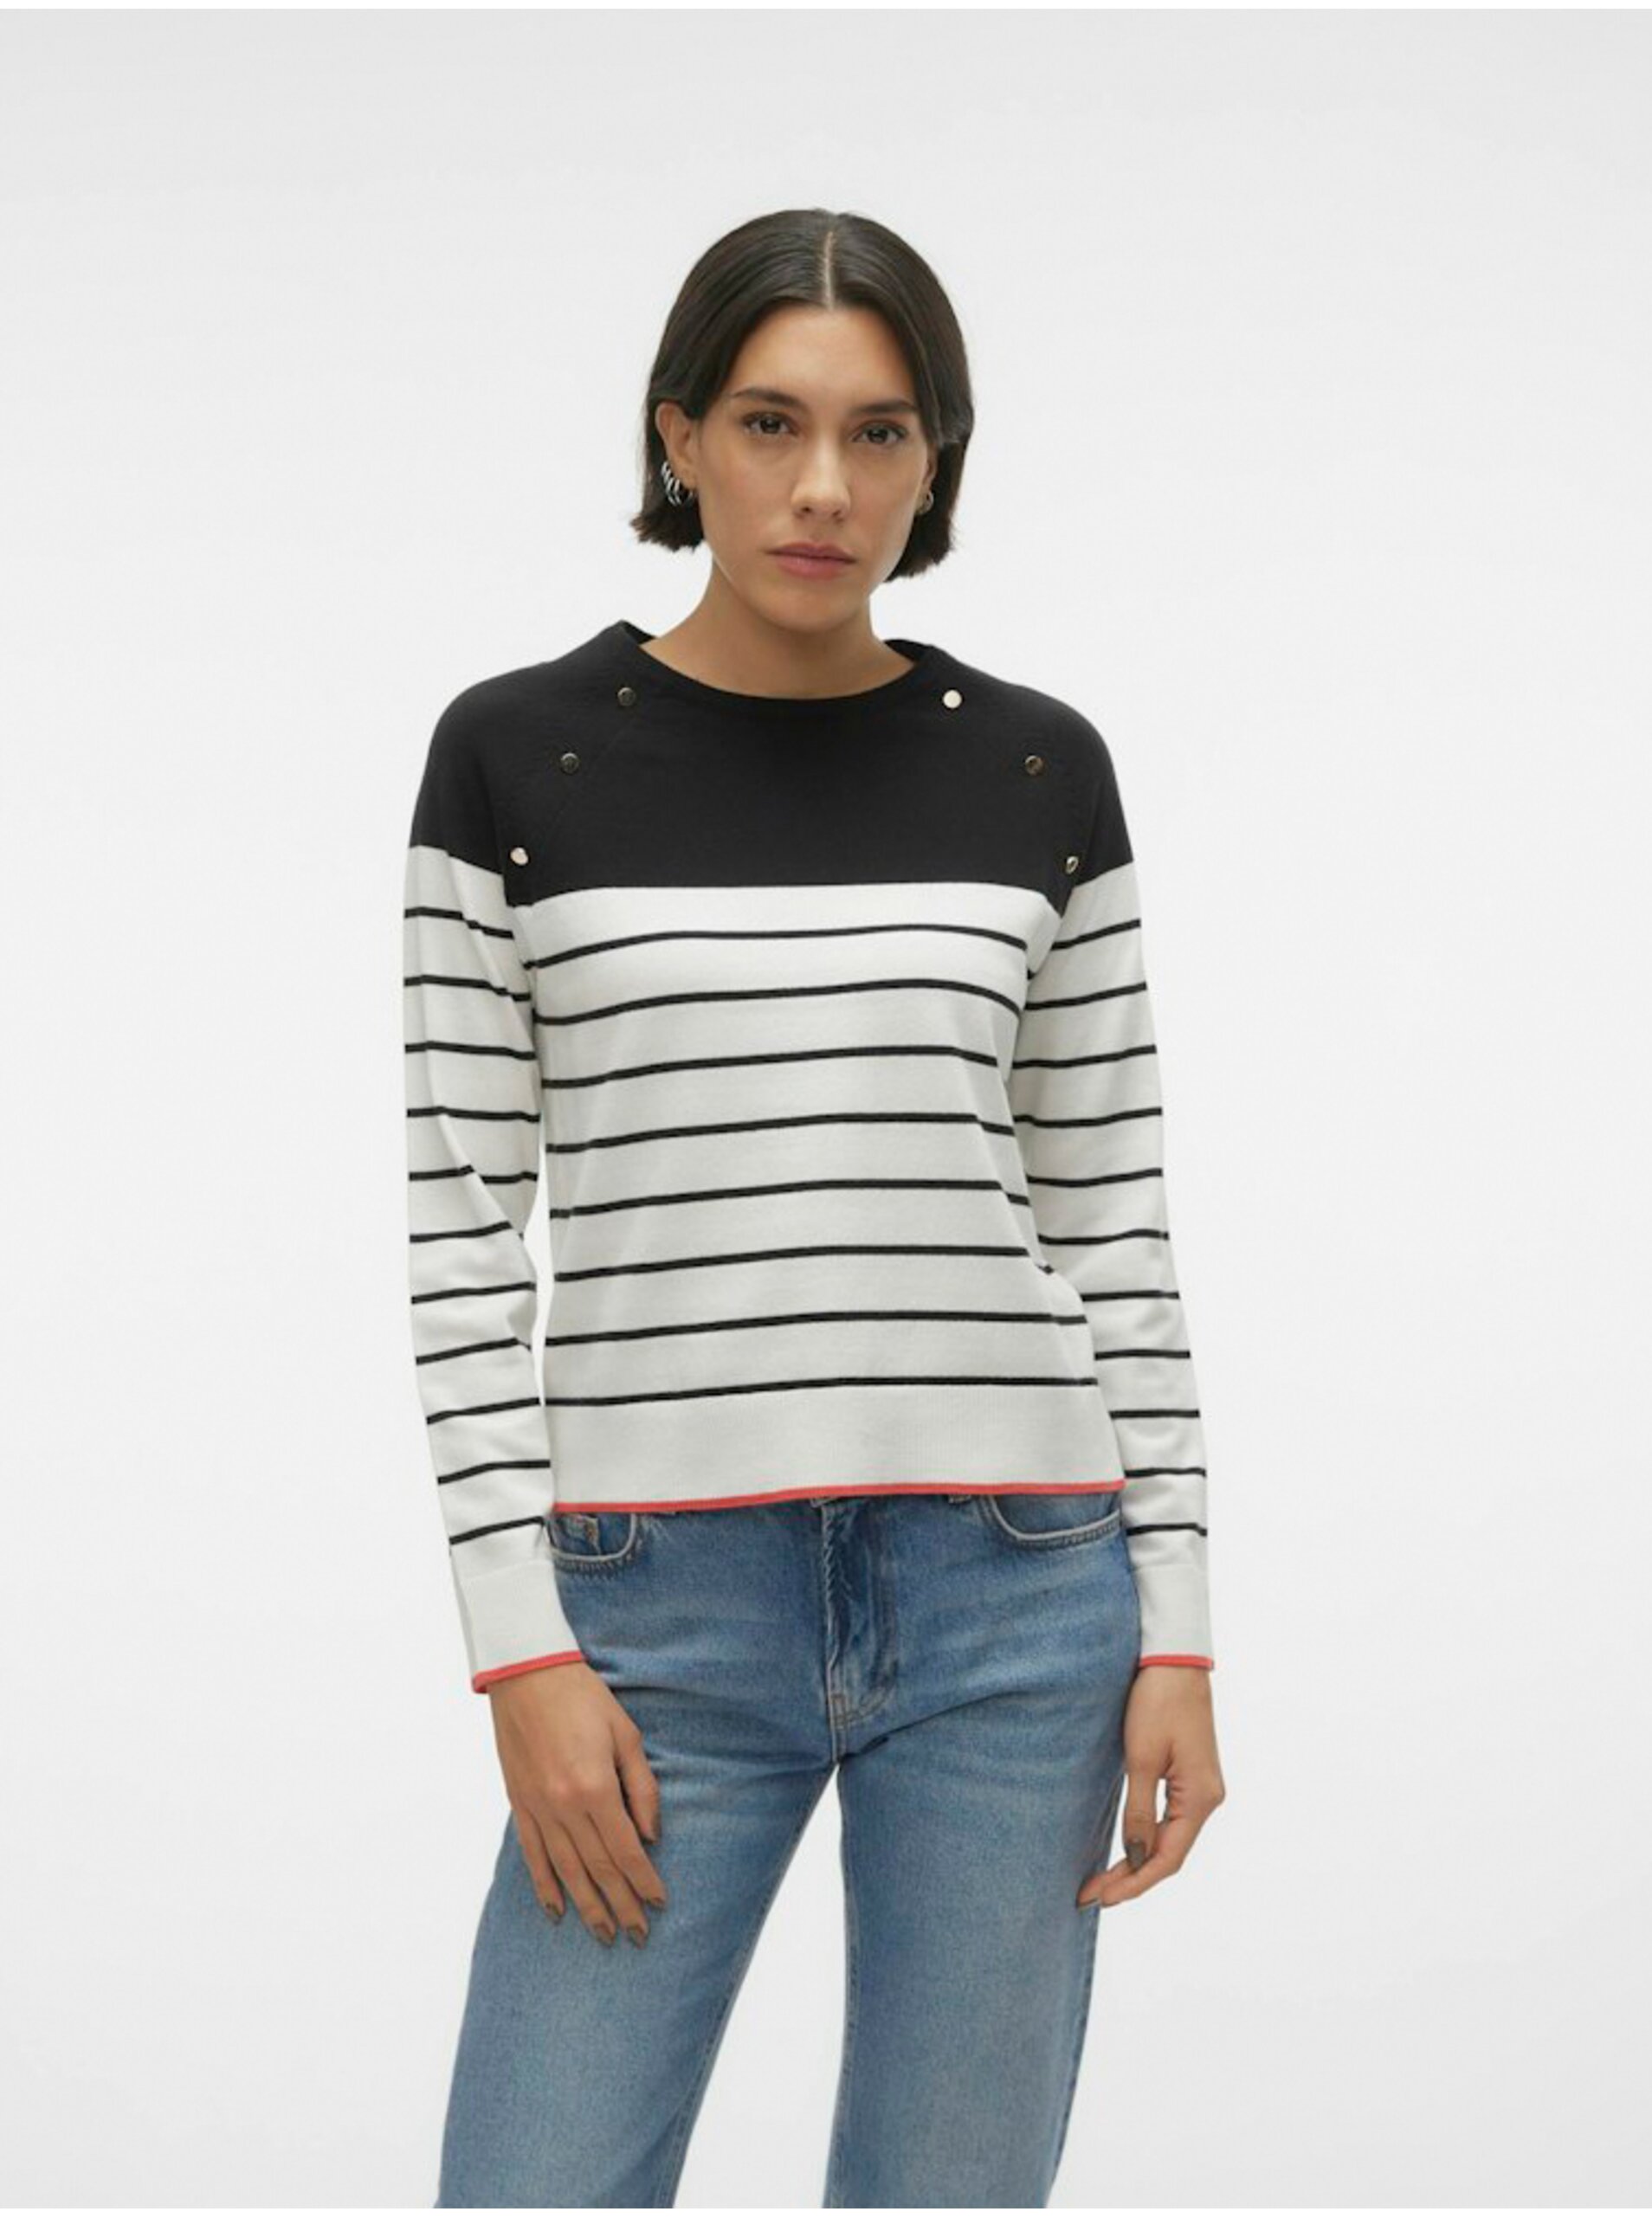 Black and White Women's Striped Sweater Vero Moda Alma - Women